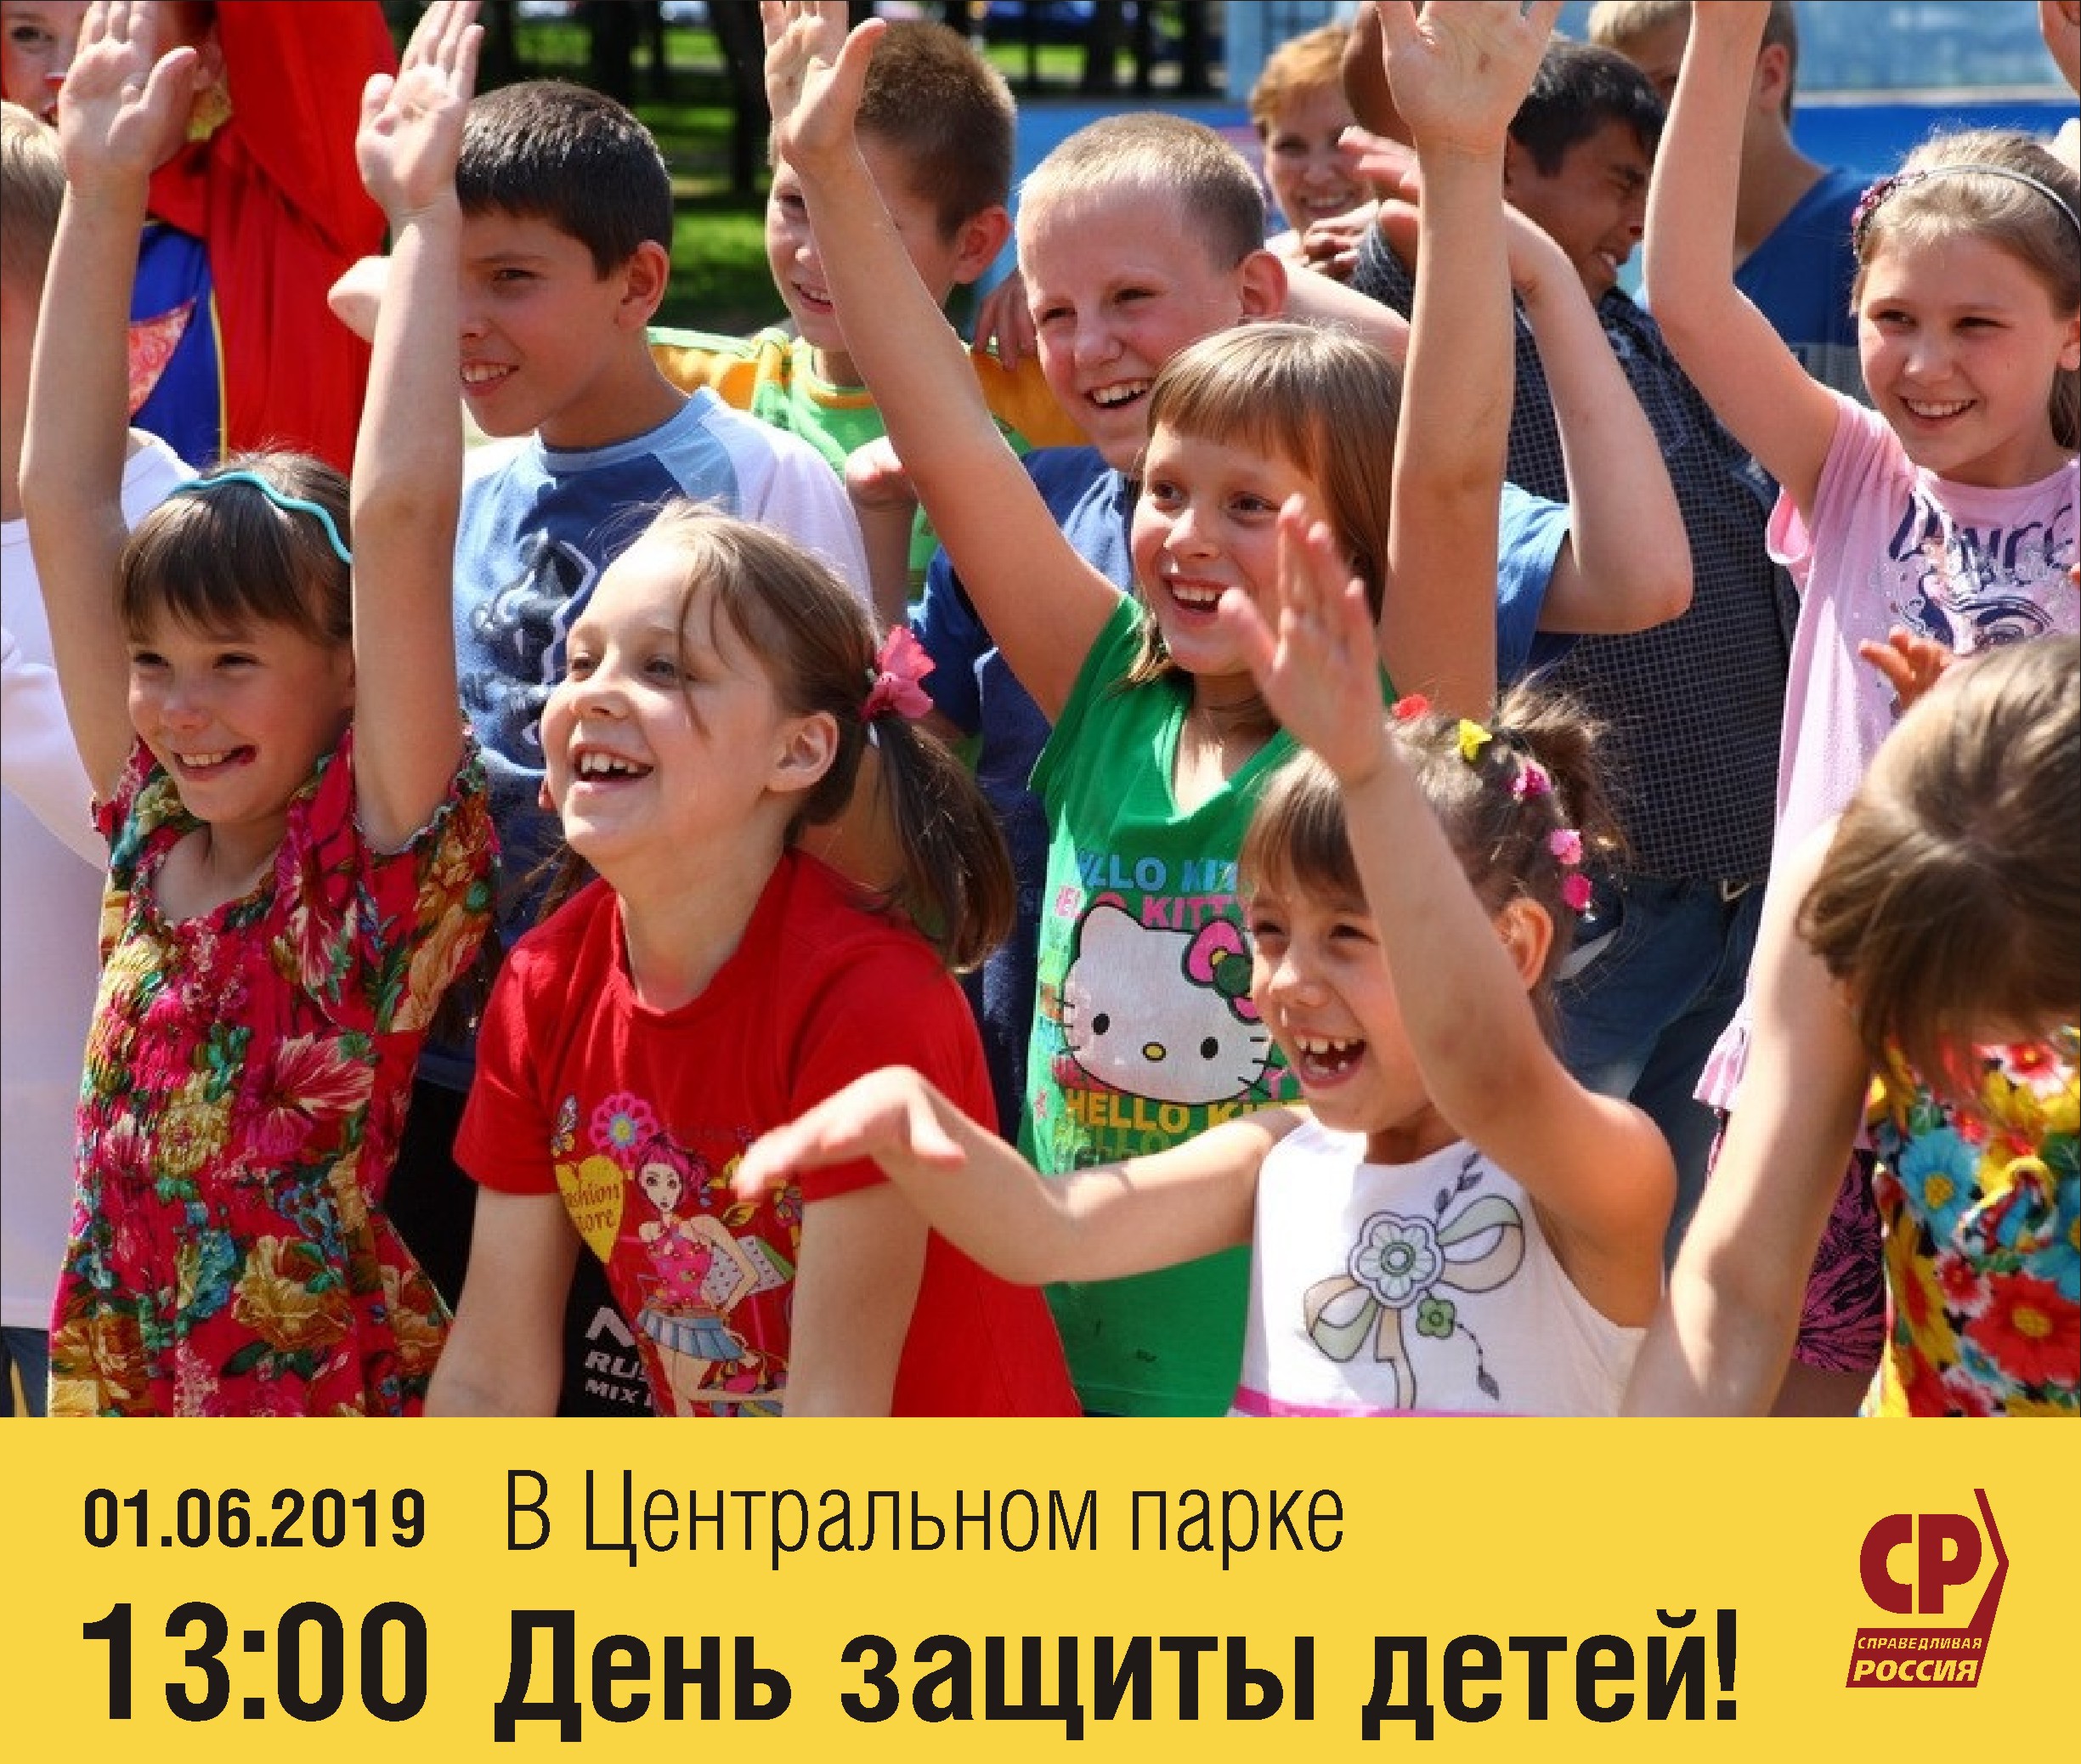 1 июня новосибирск. С днем защиты детей. День защиты детей празднование. 1 Июня день защиты детей. С праздником защиты детей.